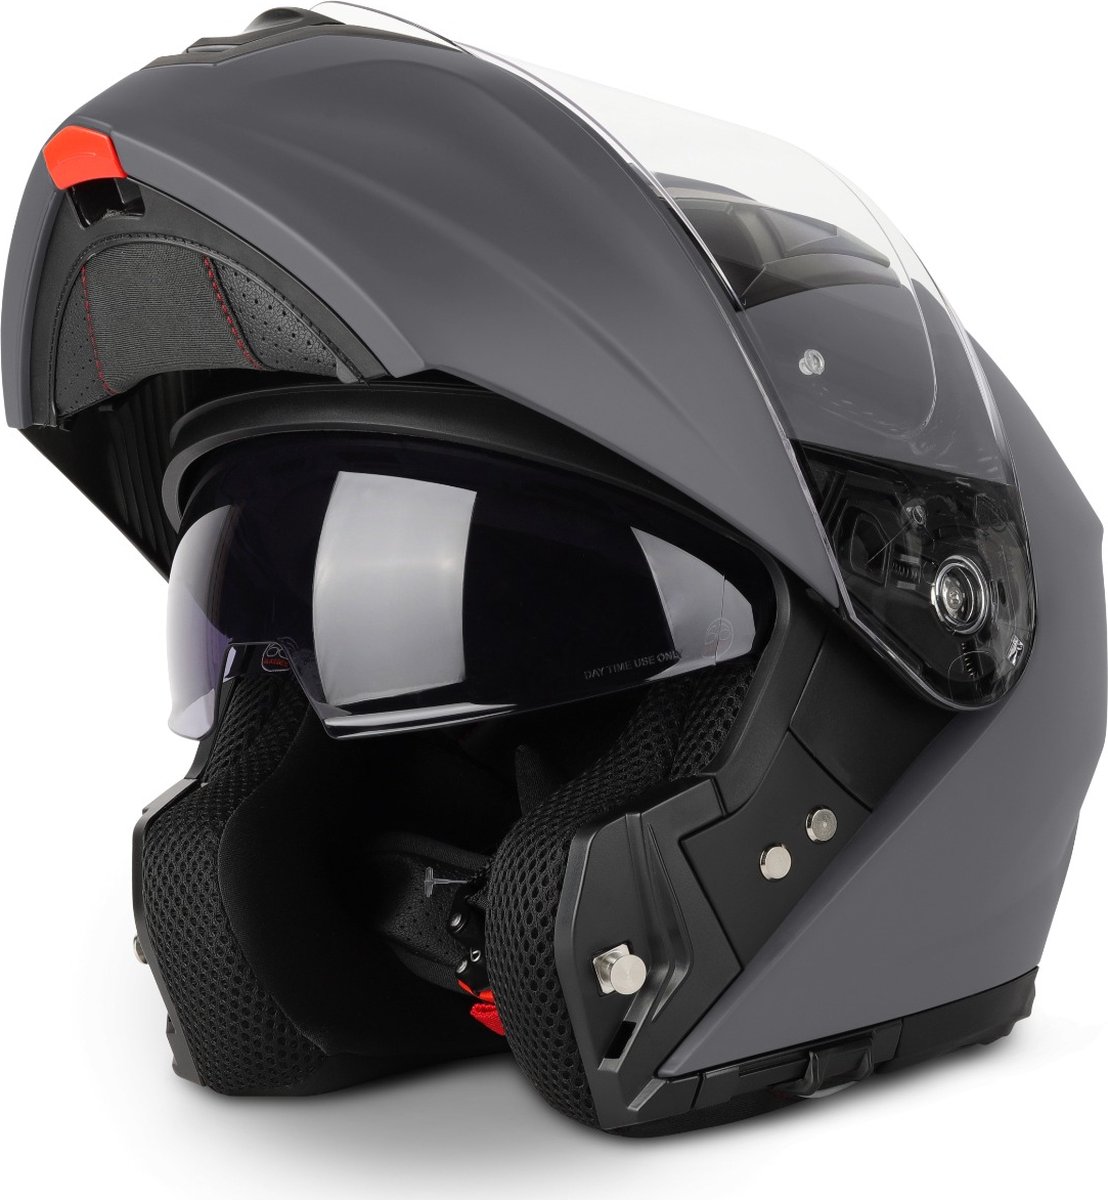 VINZ Valetta Systeemhelm met Zonnevizier | Helm voor Motor Scooter Brommer | Motorhelm Opklapbaar | Pinlock voorbereid vizier - Titanium